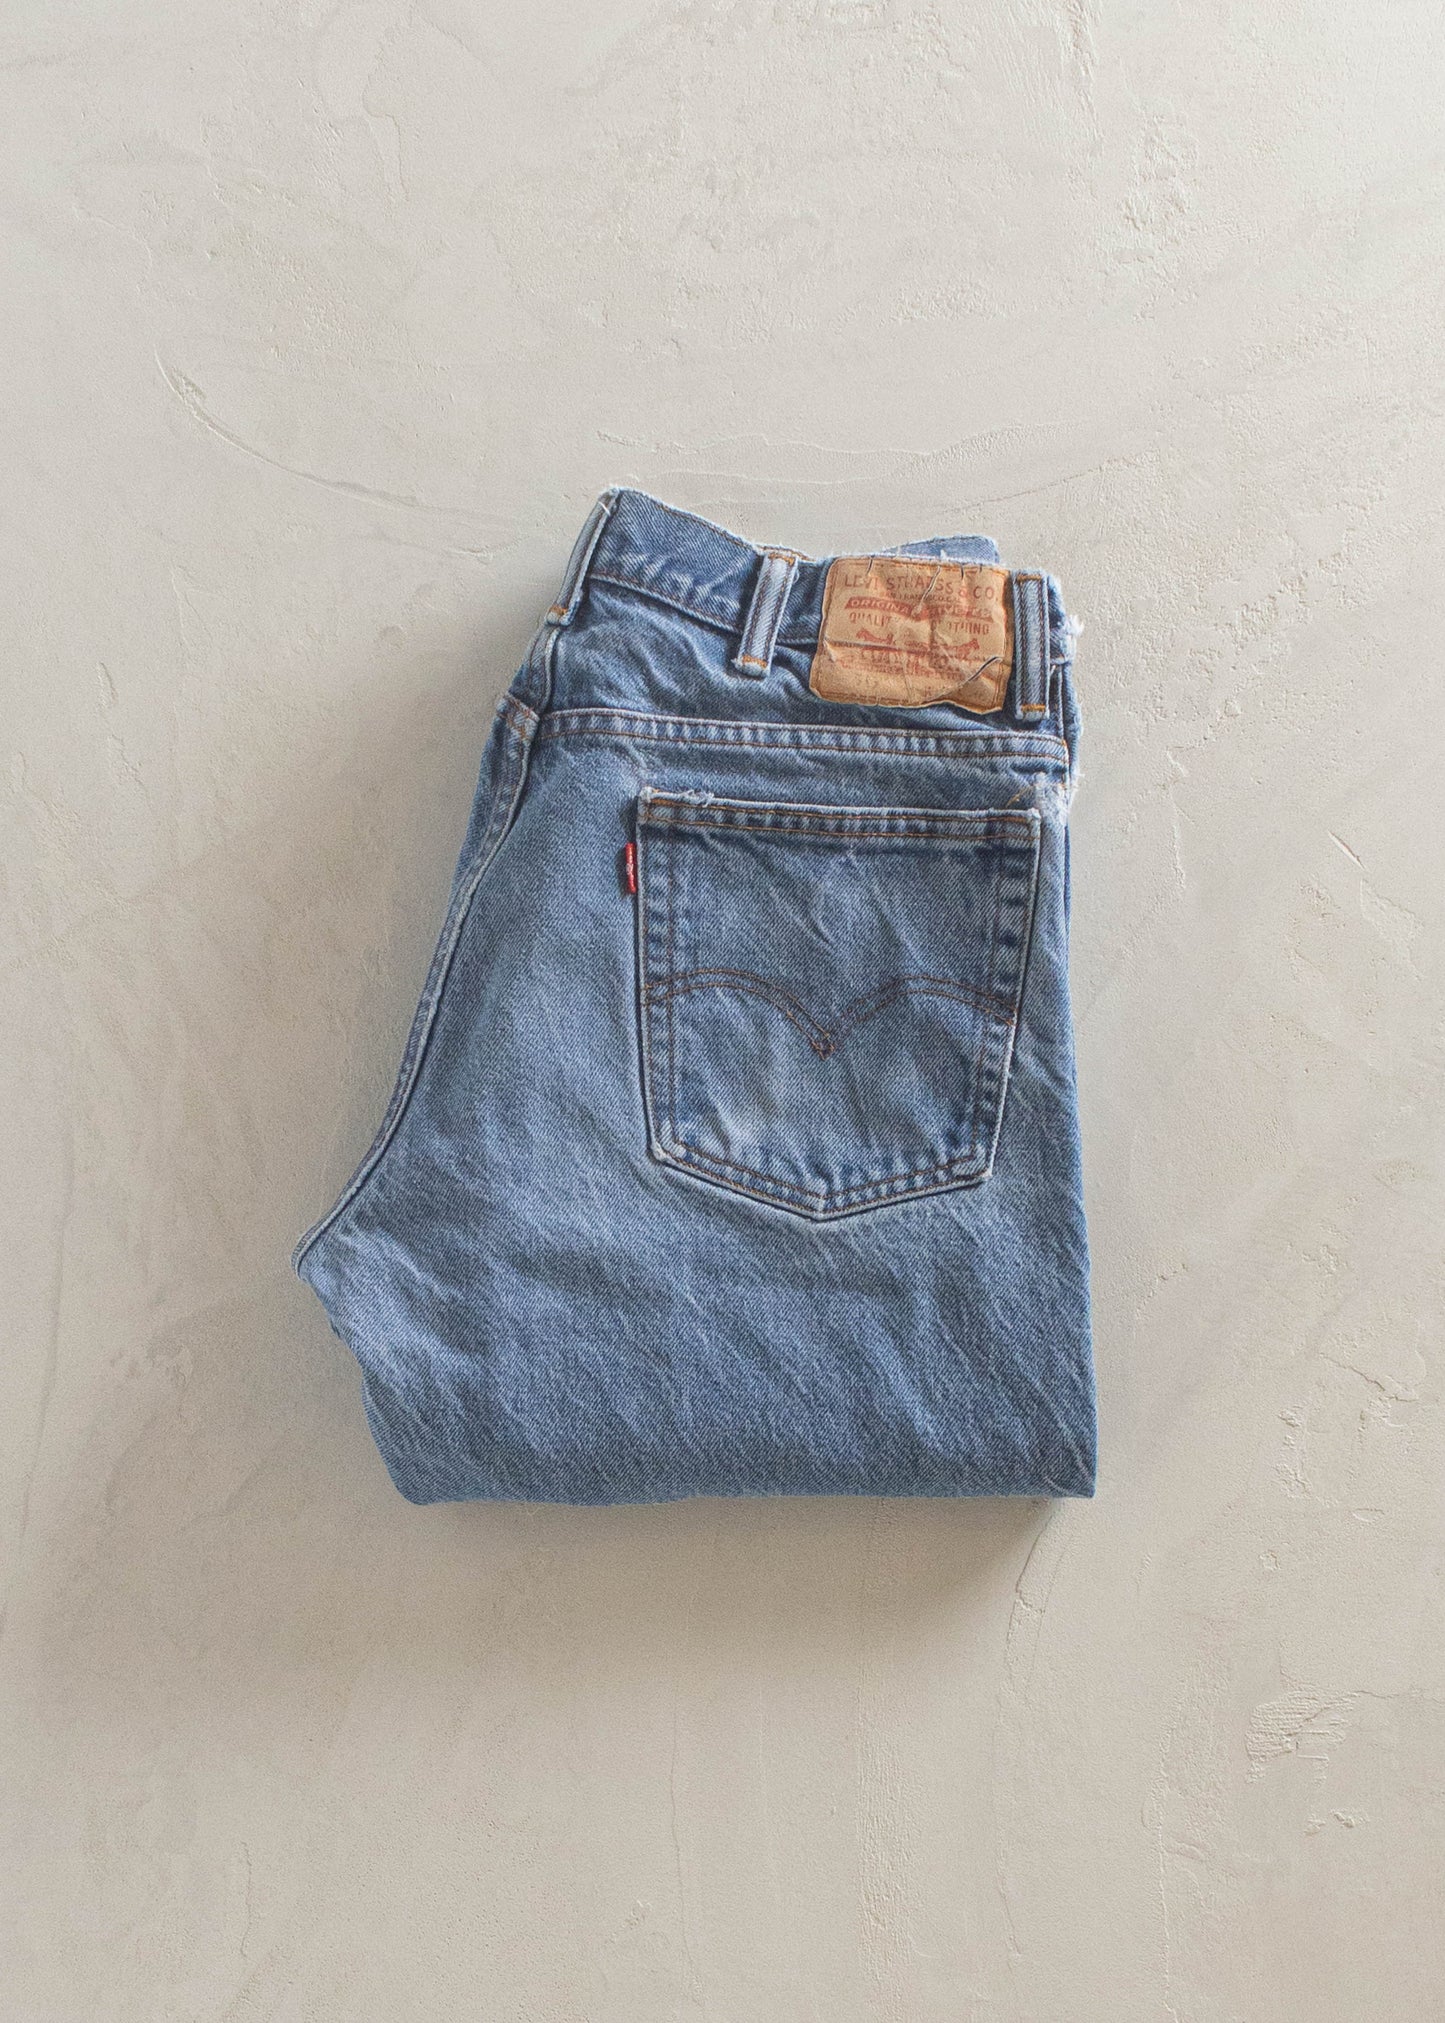 1980s Levi's 517 Midwash Jeans Size Women's 31 Men's 33